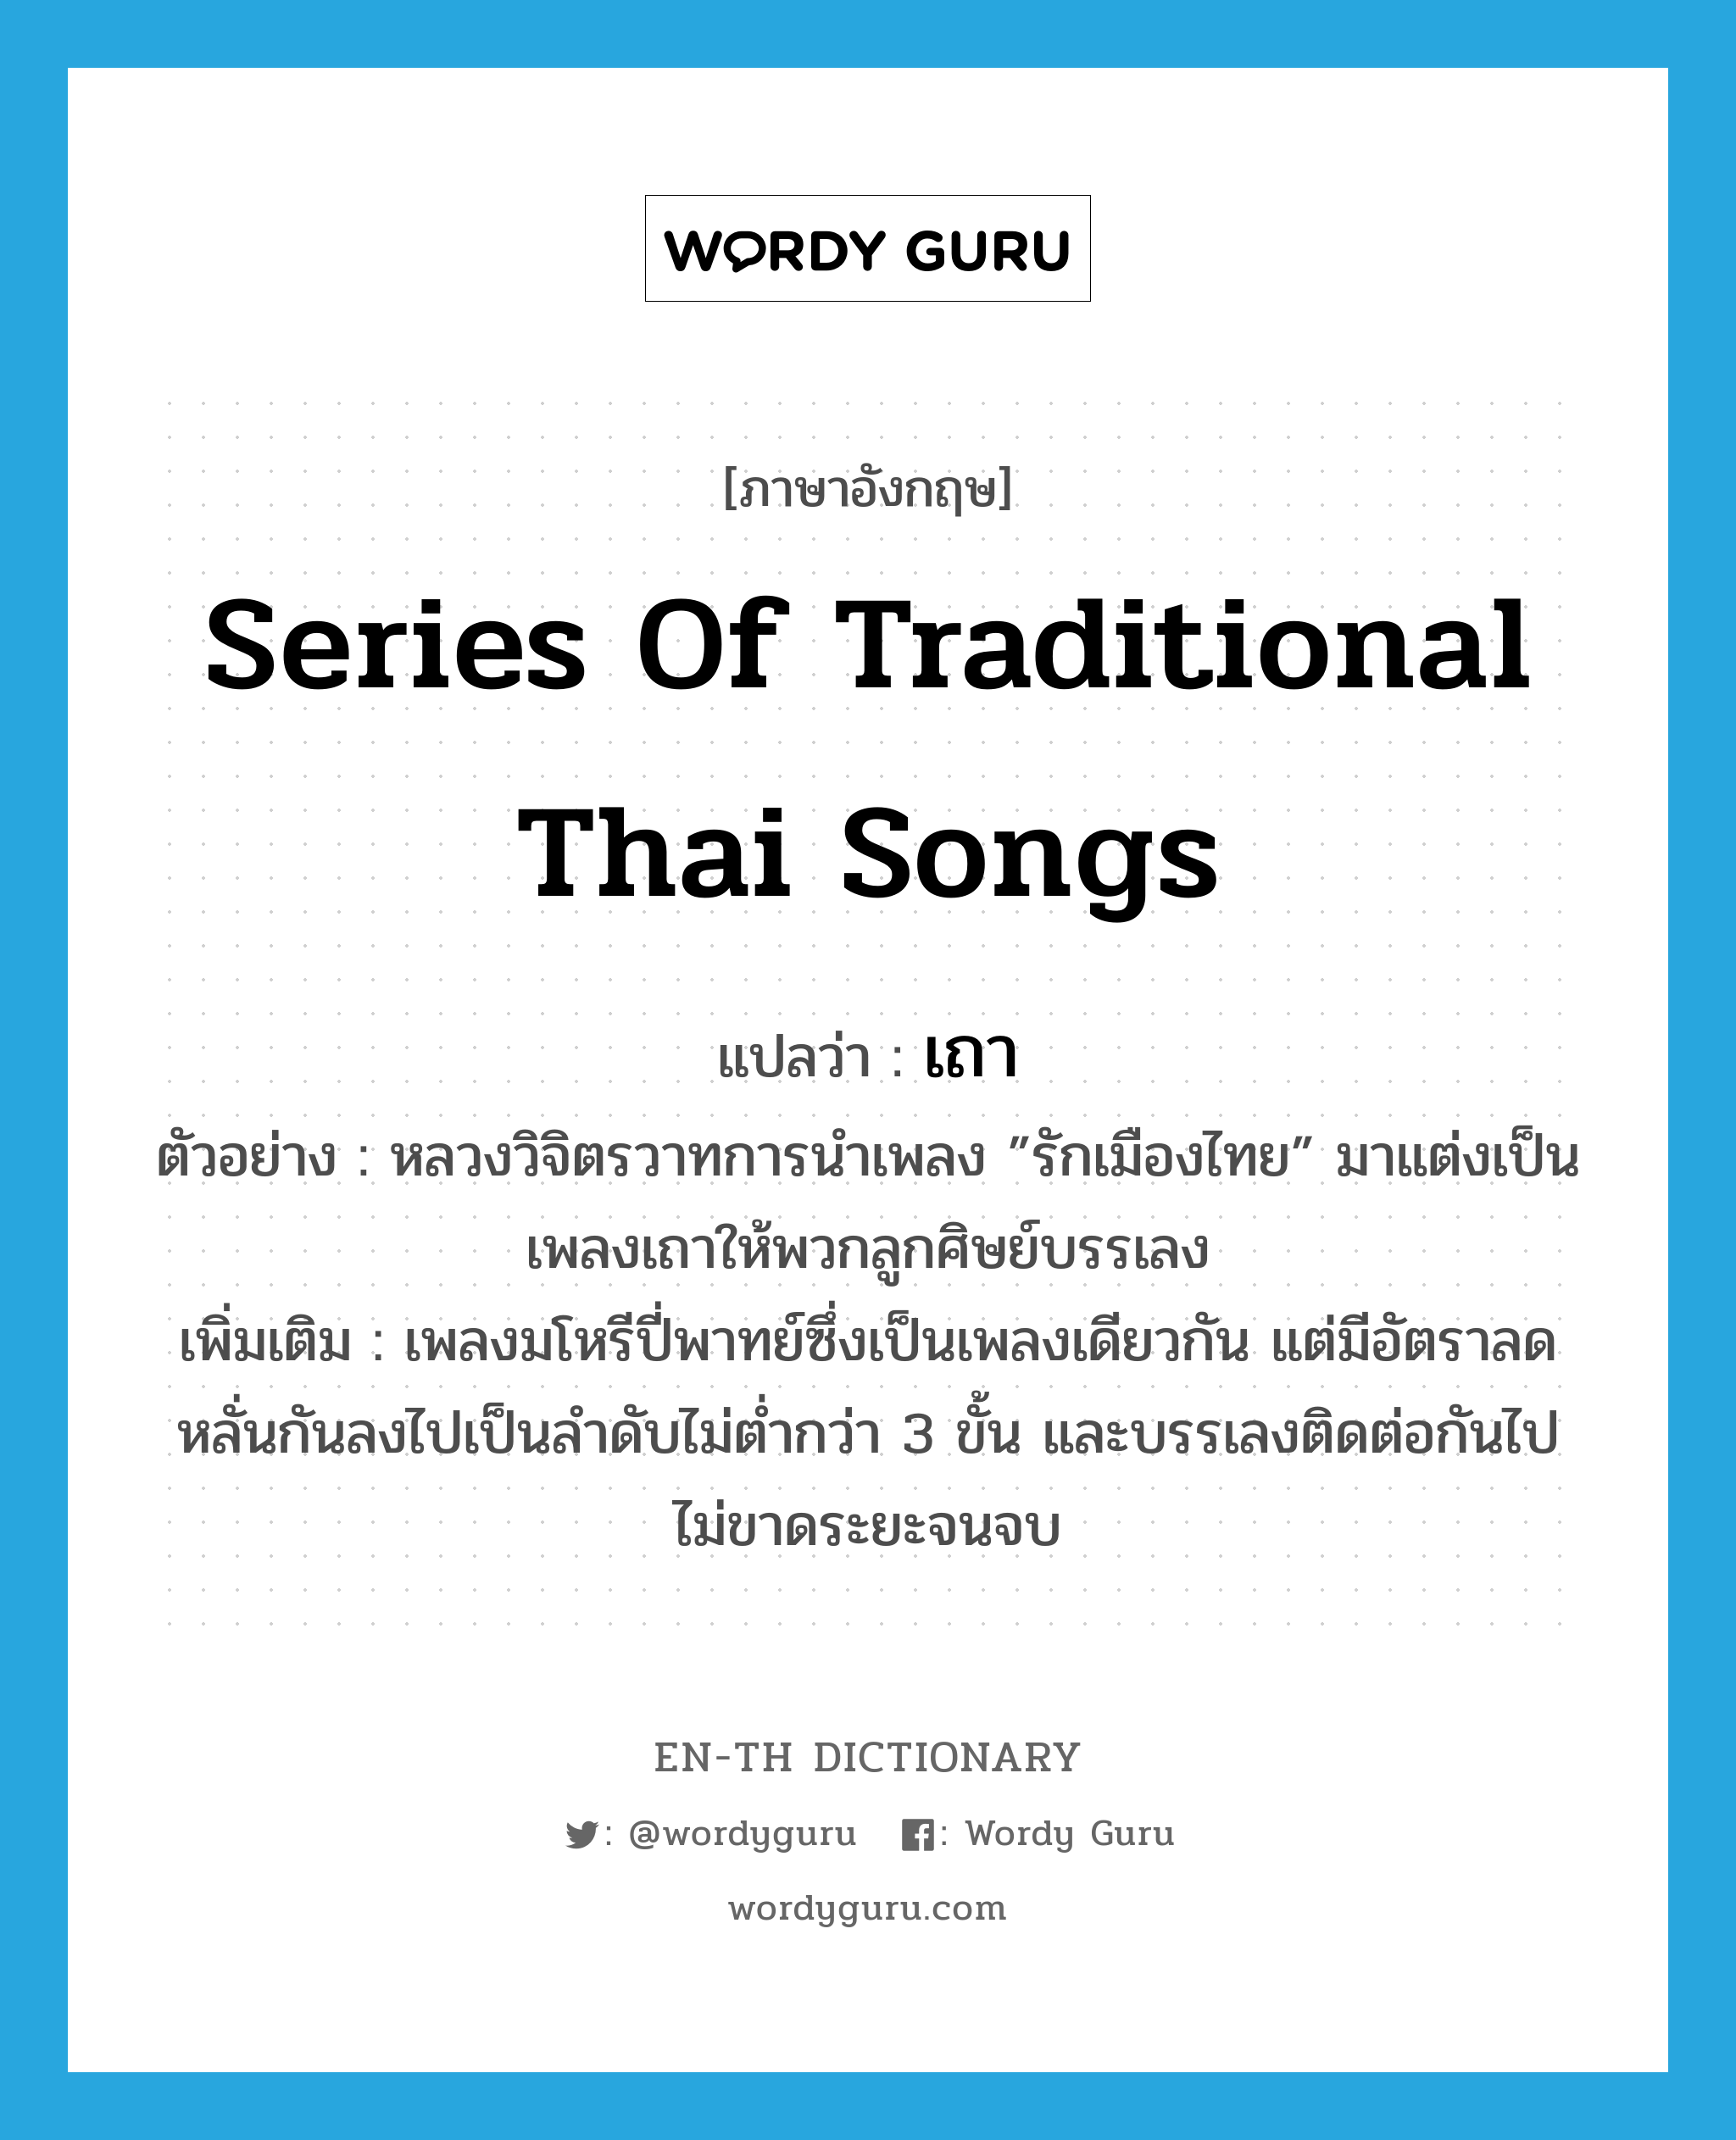 series of traditional Thai songs แปลว่า?, คำศัพท์ภาษาอังกฤษ series of traditional Thai songs แปลว่า เถา ประเภท N ตัวอย่าง หลวงวิจิตรวาทการนำเพลง ”รักเมืองไทย” มาแต่งเป็นเพลงเถาให้พวกลูกศิษย์บรรเลง เพิ่มเติม เพลงมโหรีปี่พาทย์ซึ่งเป็นเพลงเดียวกัน แต่มีอัตราลดหลั่นกันลงไปเป็นลำดับไม่ต่ำกว่า 3 ขั้น และบรรเลงติดต่อกันไปไม่ขาดระยะจนจบ หมวด N